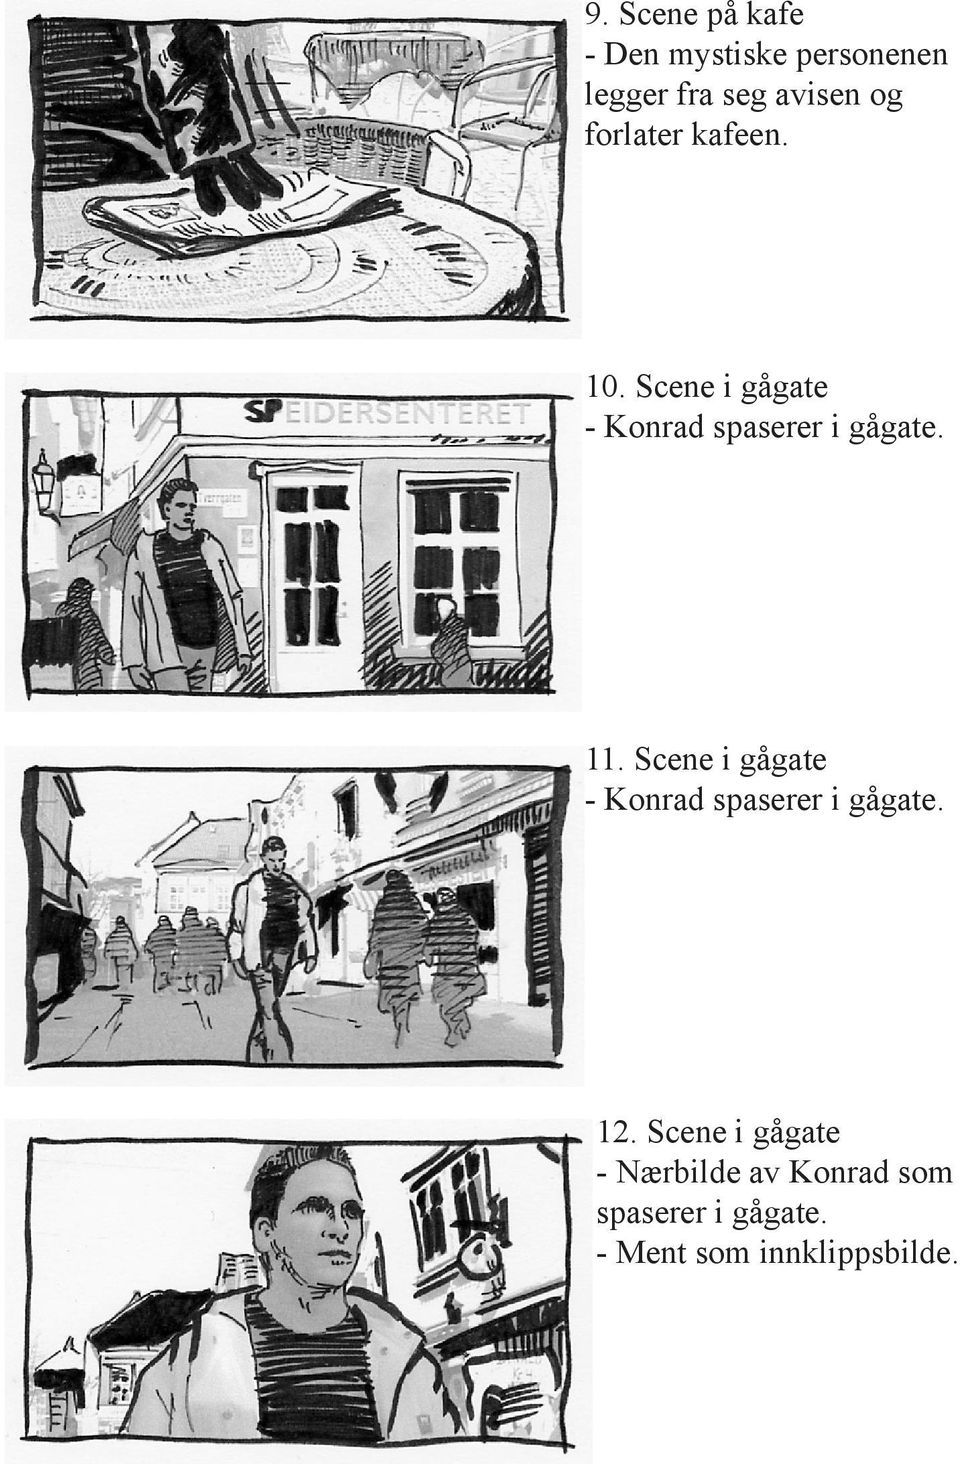 11. Scene i gågate - Konrad spaserer i gågate. 12.